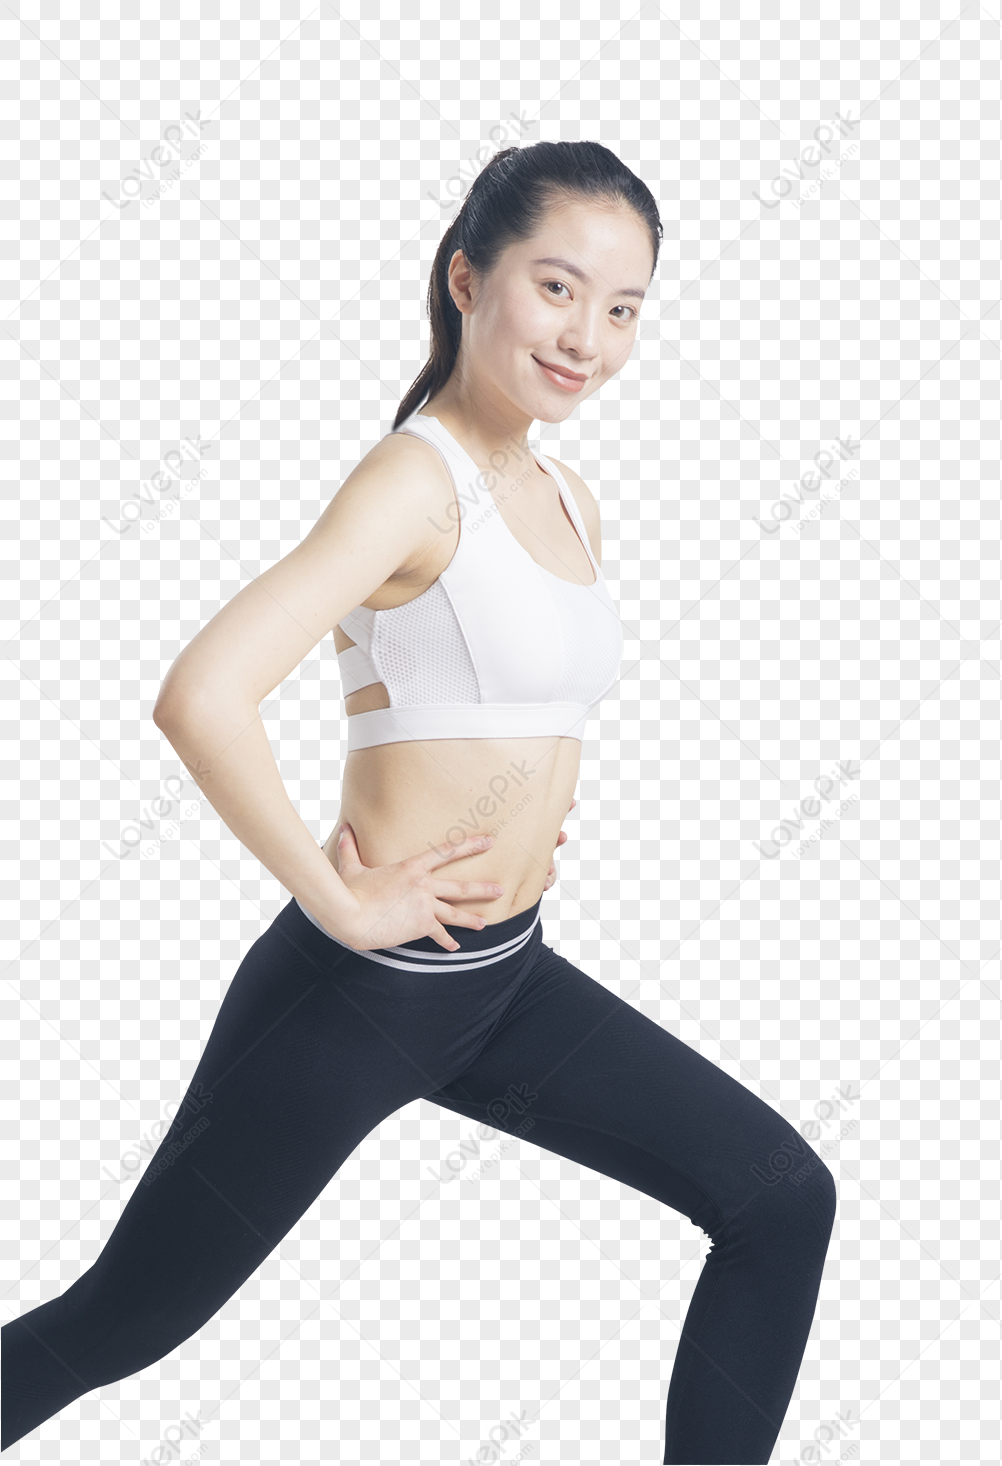 Fitness PNG Imagens com fundo transparente